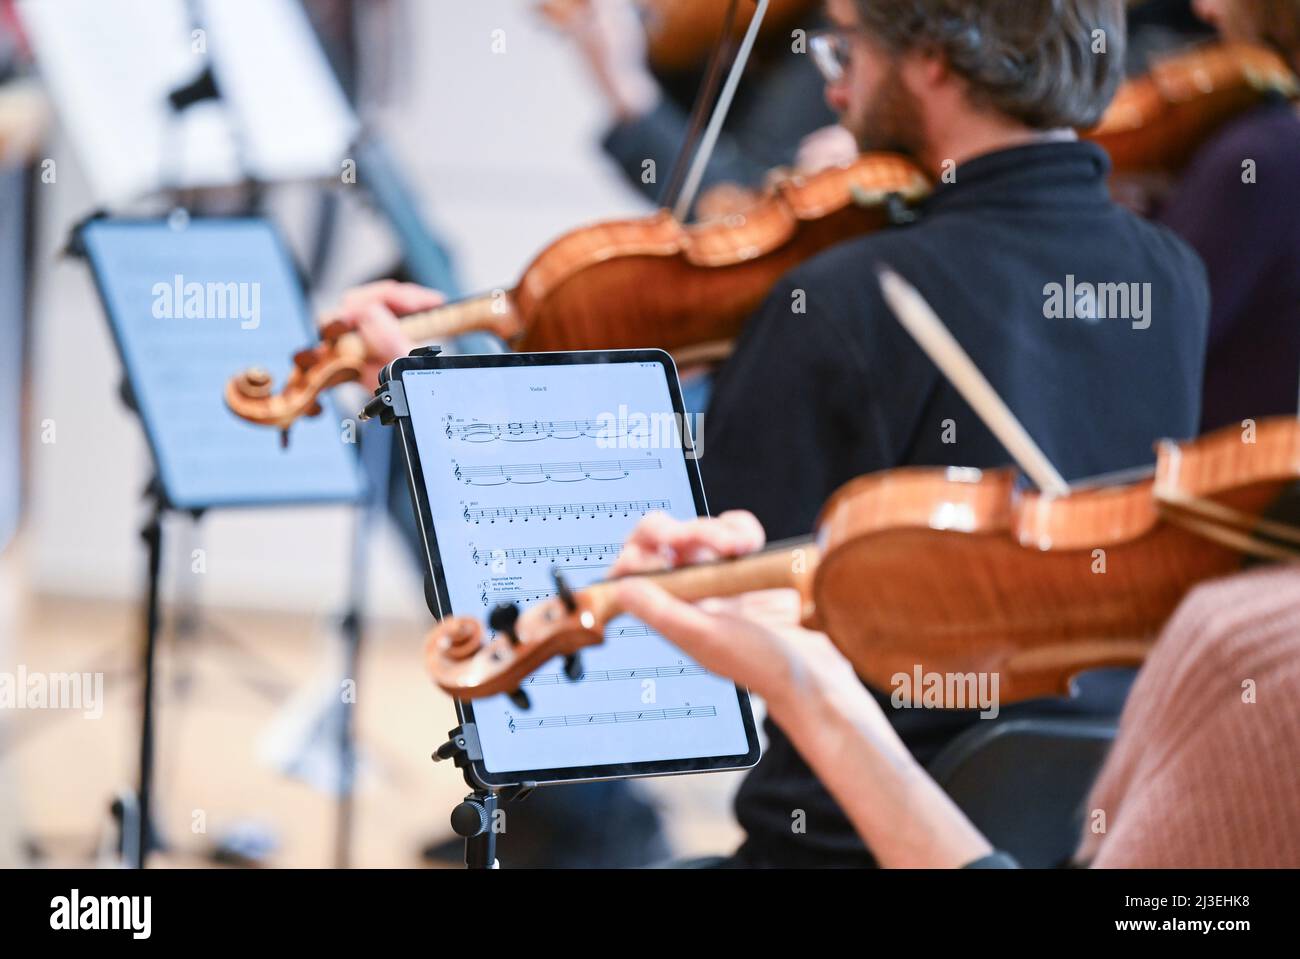 Stoccarda, Germania. 06th Apr 2022. In occasione di una prova  dell'Orchestra da Camera di Stoccarda, i musicisti usano i tablet per la  loro spartiti musicali e non più carta. L'elettronica consente ai